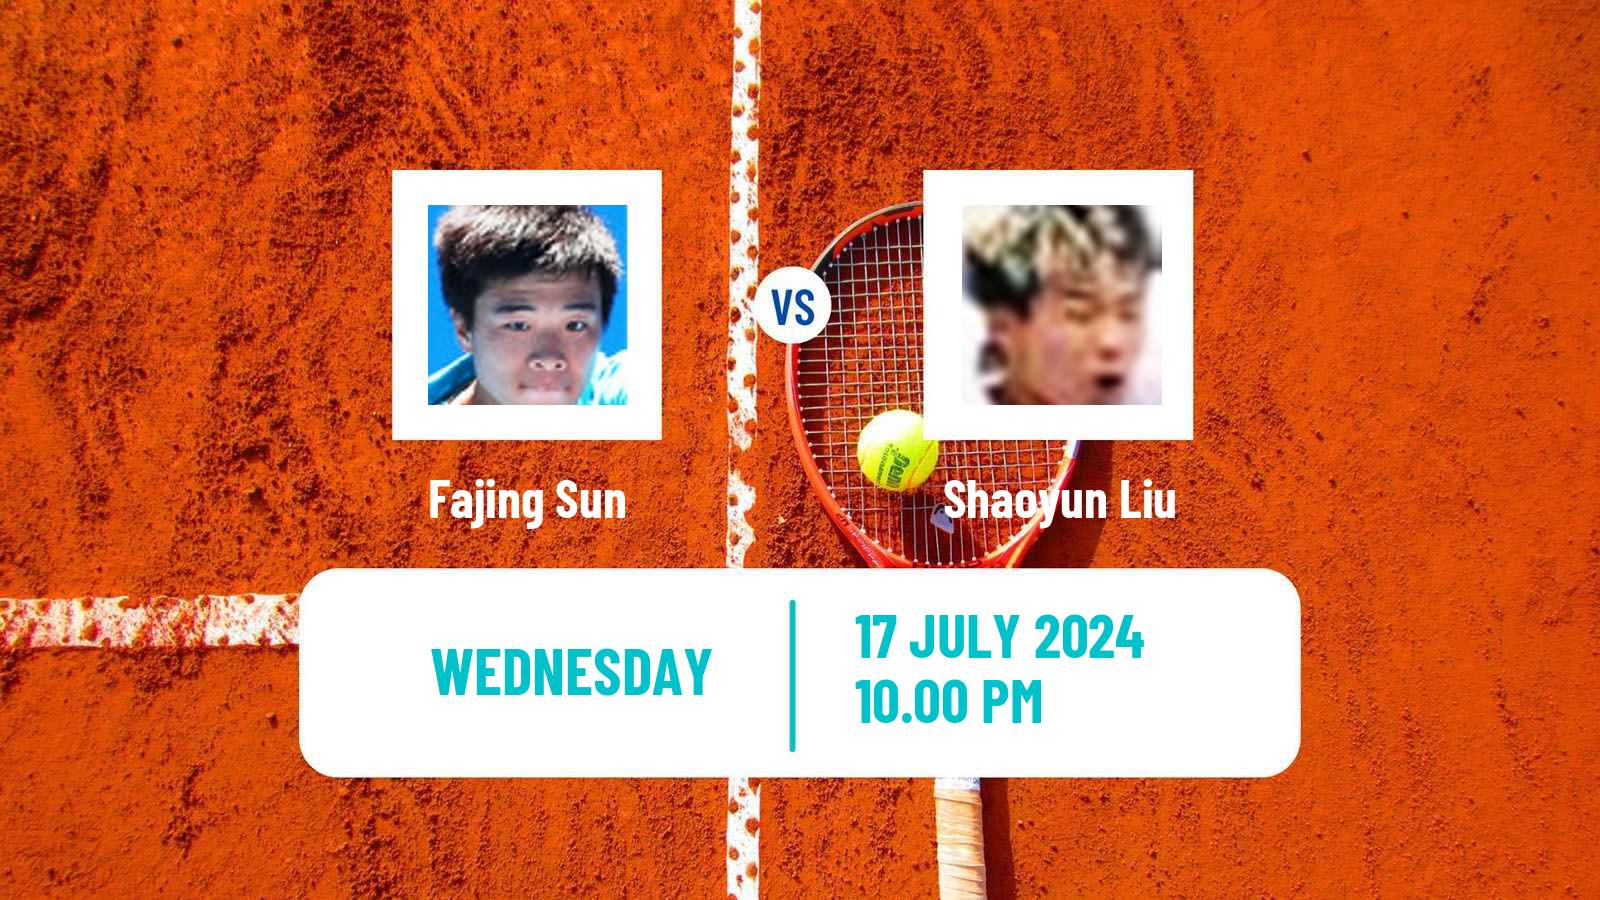 Tennis ITF M25 Tianjin 2 Men Fajing Sun - Shaoyun Liu